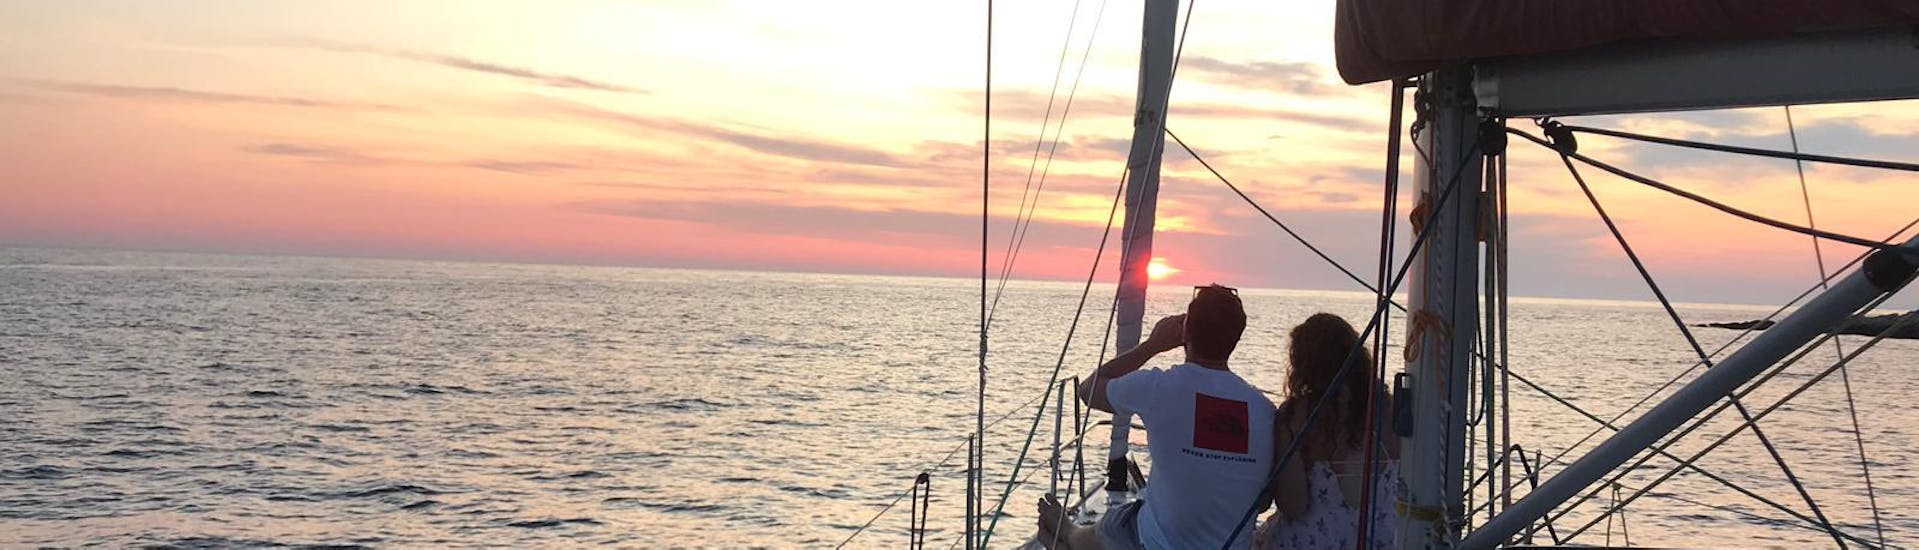 Passagiere, die den Sonnenuntergang während des privaten romantischen Segelausflugs zum Kap Pelegrin von Hvar The Day Sail aus betrachten.